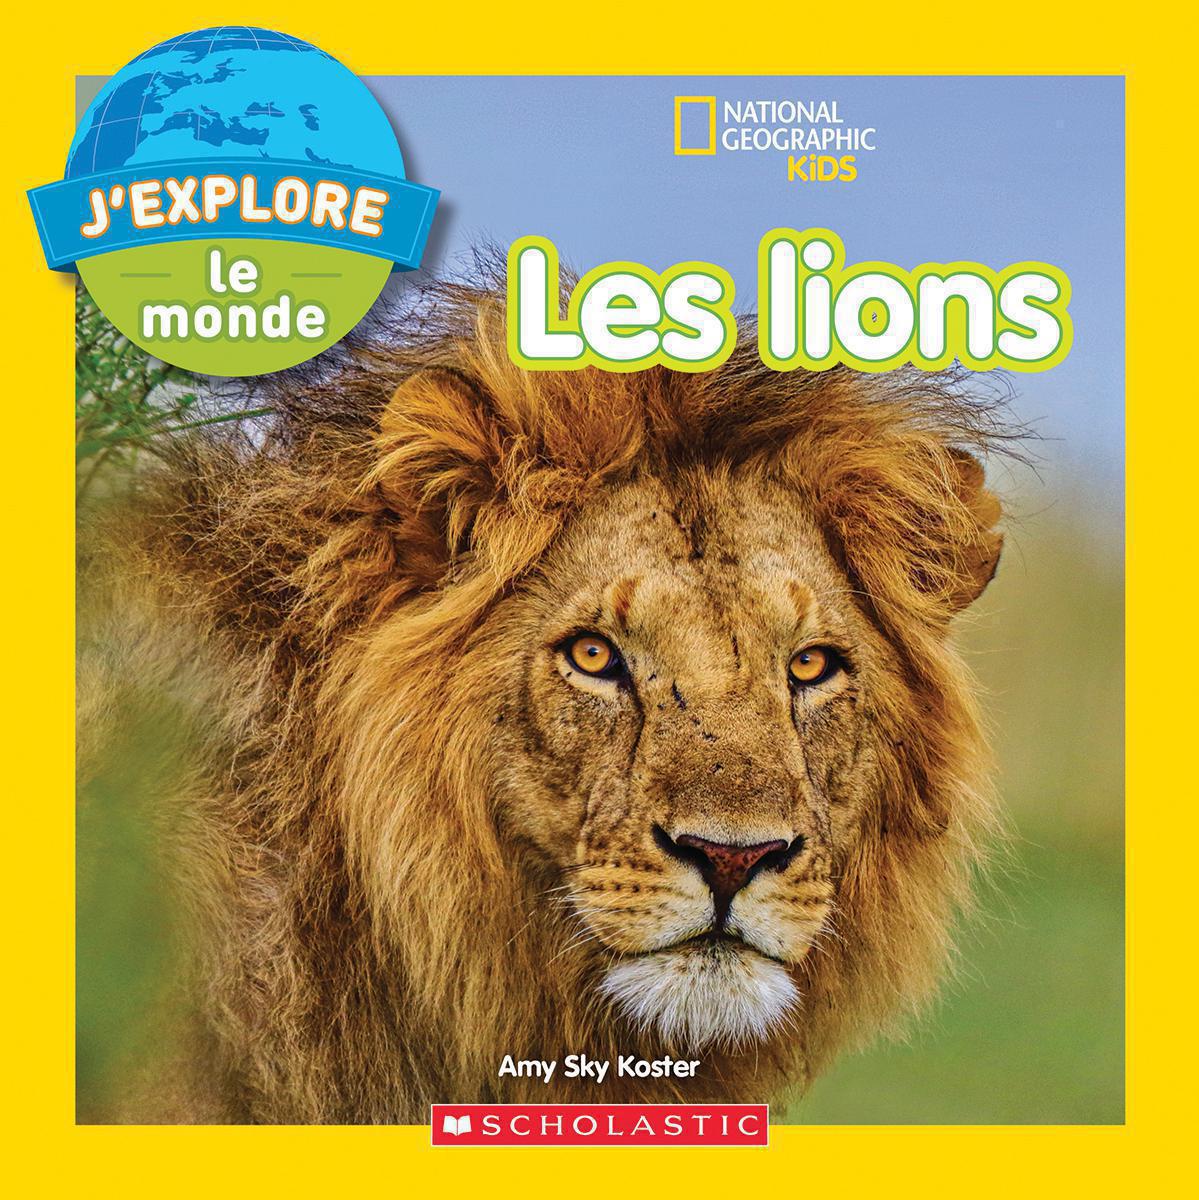  National Geographic Kids : J'explore le monde : Les lions 